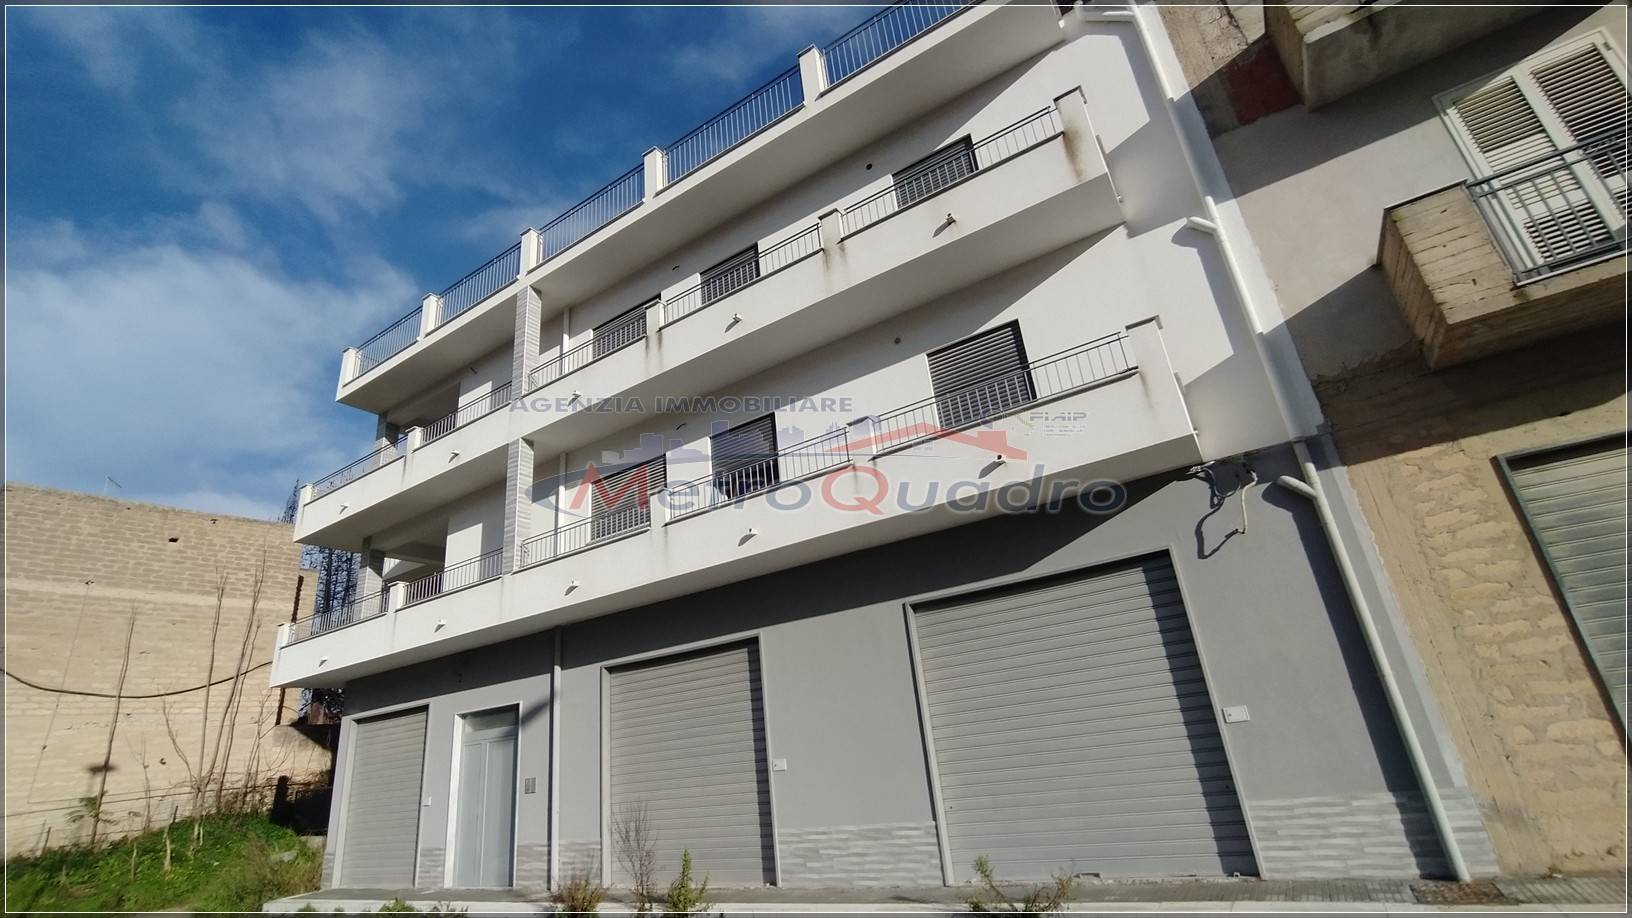 Appartamento in vendita a Canicattì, 3 locali, zona Località: AB 1 ZONA OSPEDALE, prezzo € 100.000 | CambioCasa.it